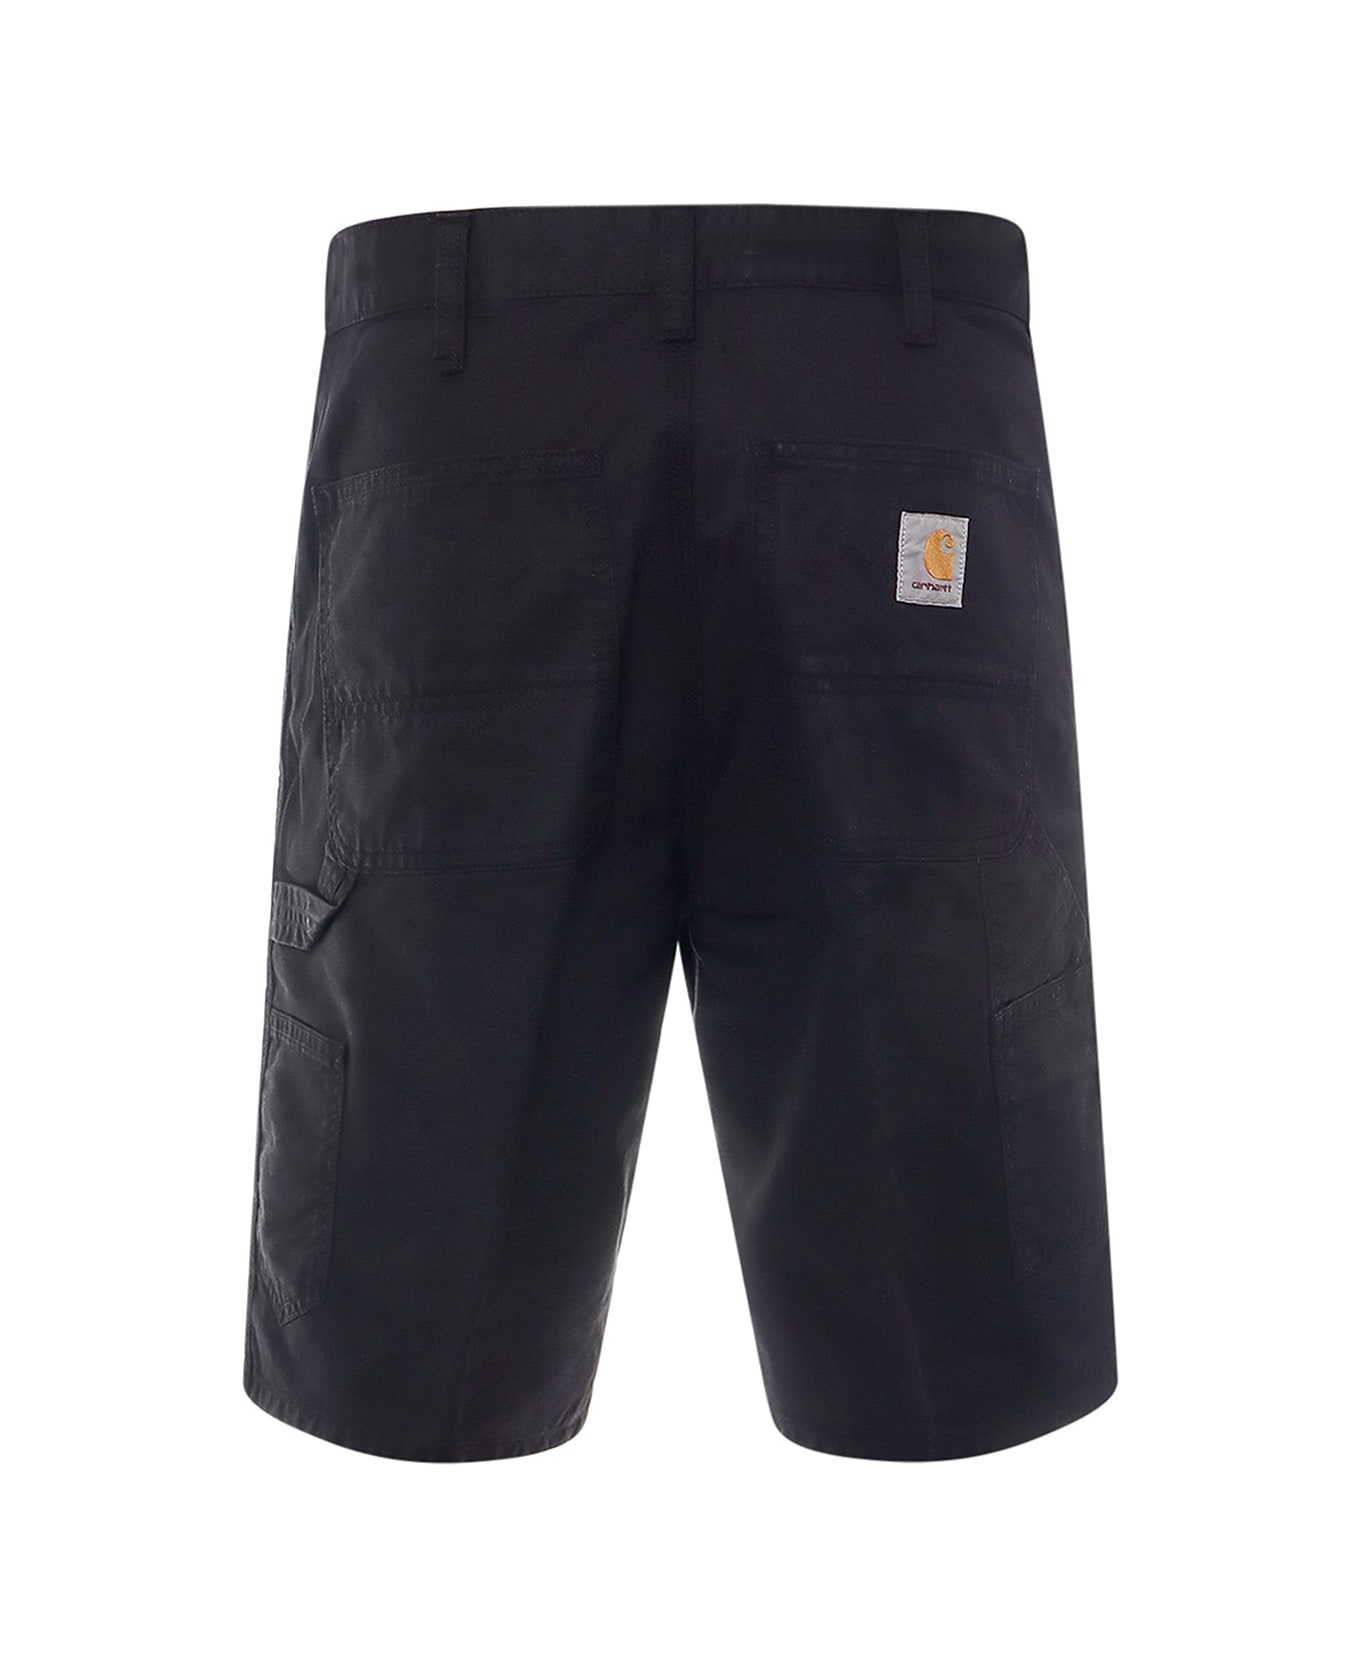 Carhartt Bermuda Shorts - Black ショートパンツ